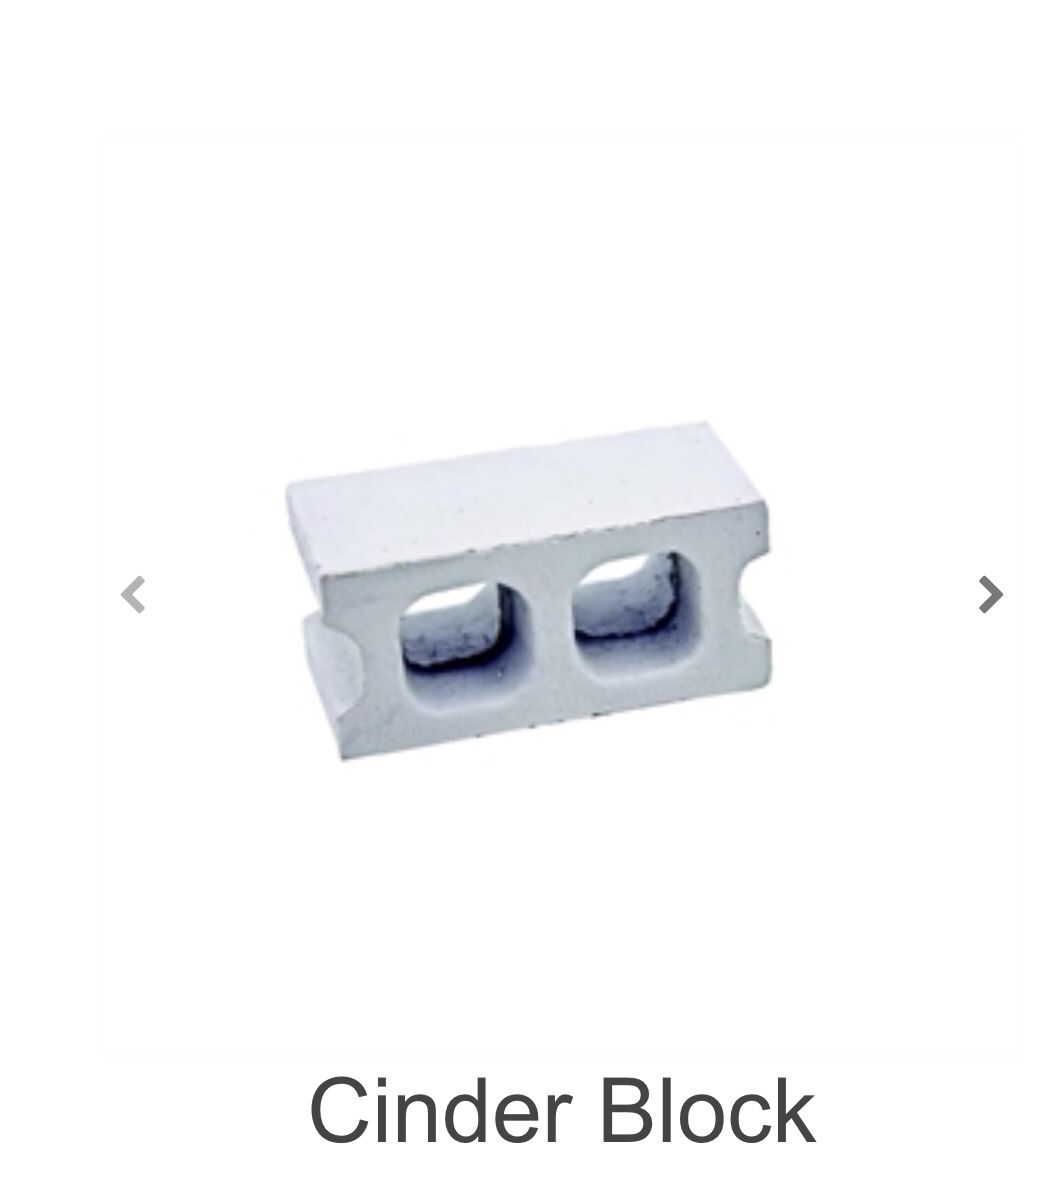 Free cinder blocks